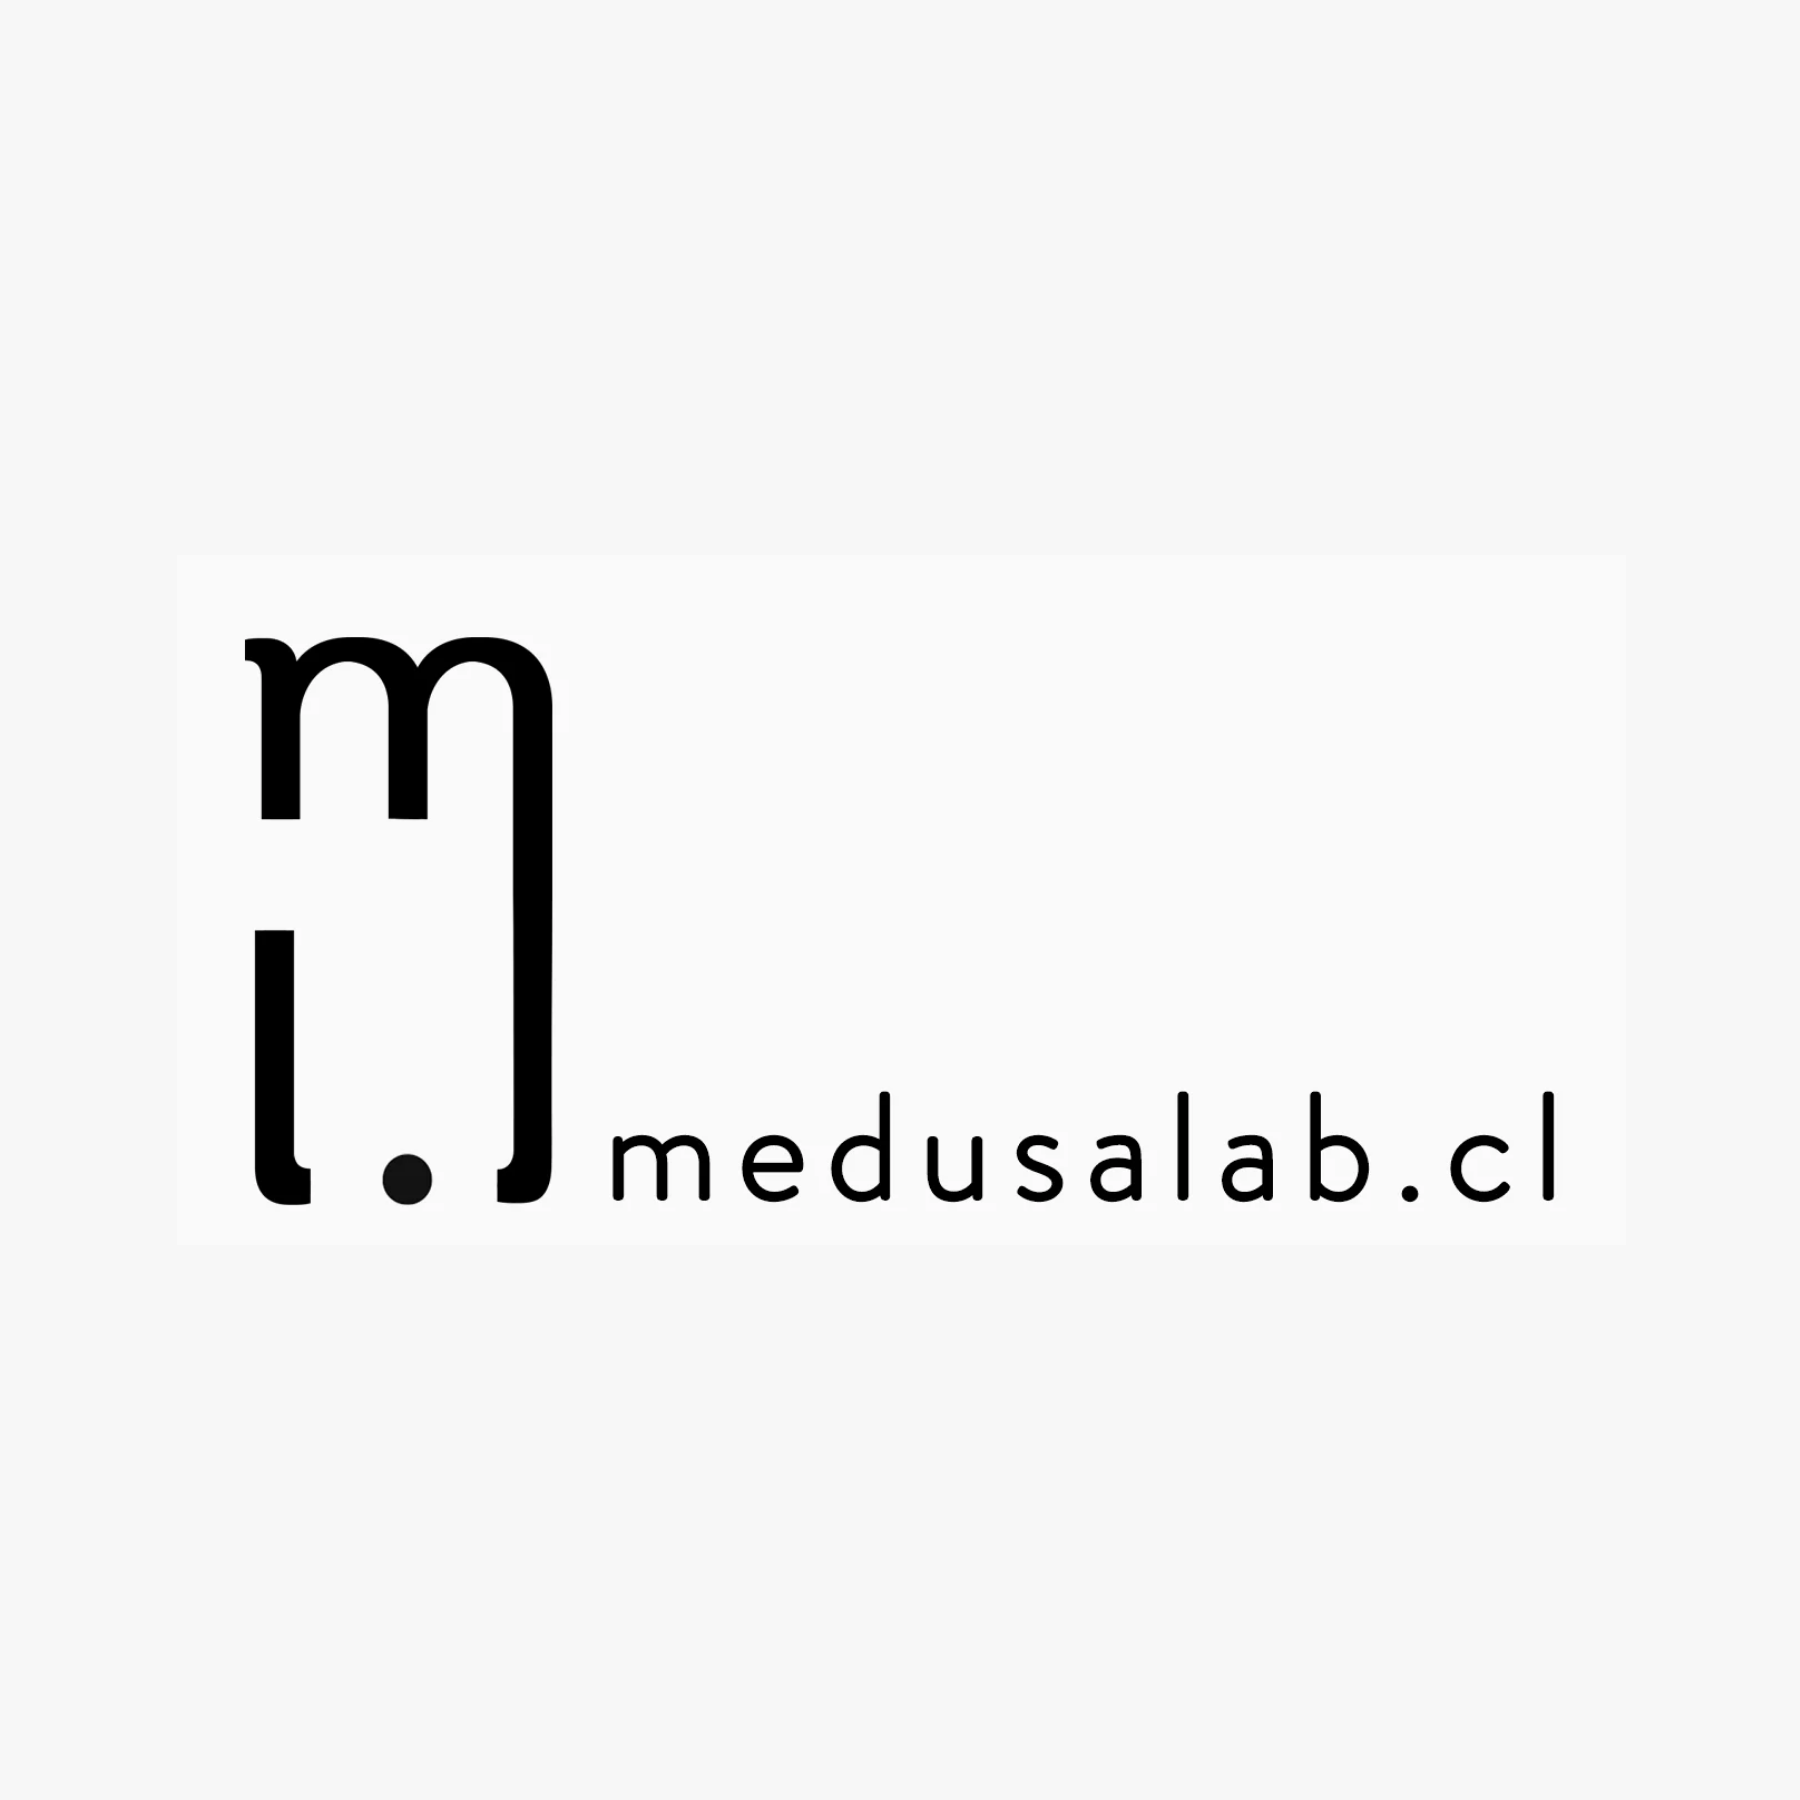 Medusa Lab